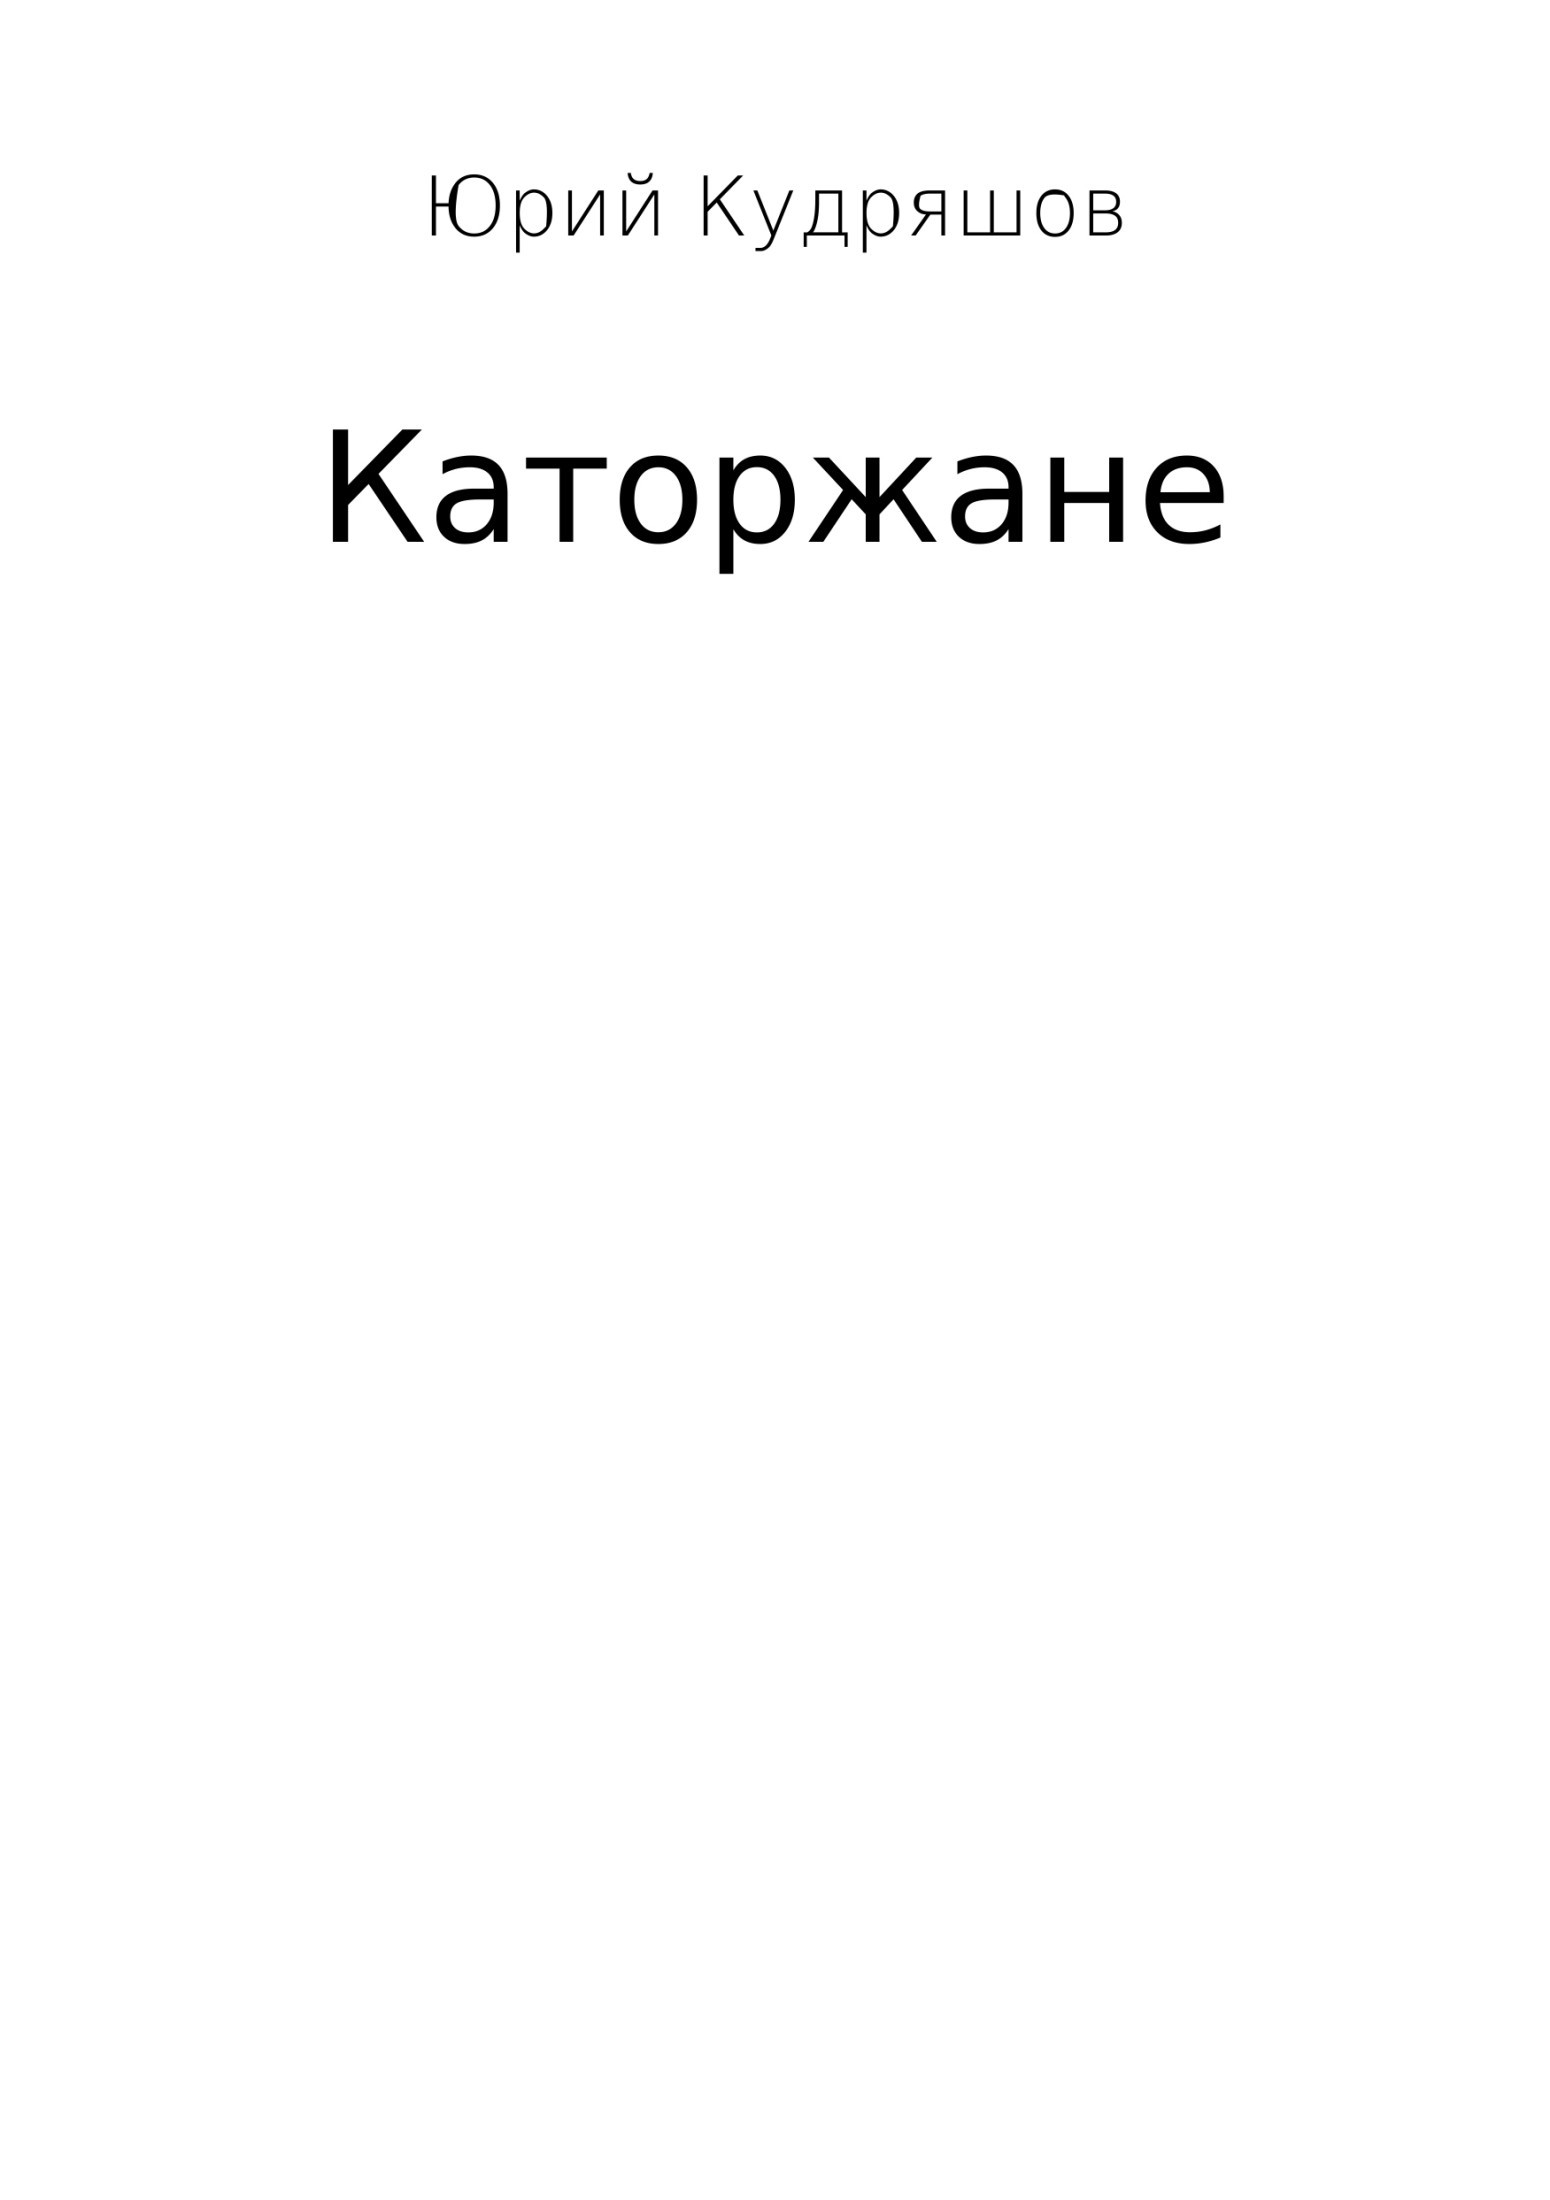 Книга Каторжане из серии , созданная Юрий Кудряшов, может относится к жанру Психотерапия и консультирование, Современная русская литература. Стоимость электронной книги Каторжане с идентификатором 29410622 составляет 0 руб.